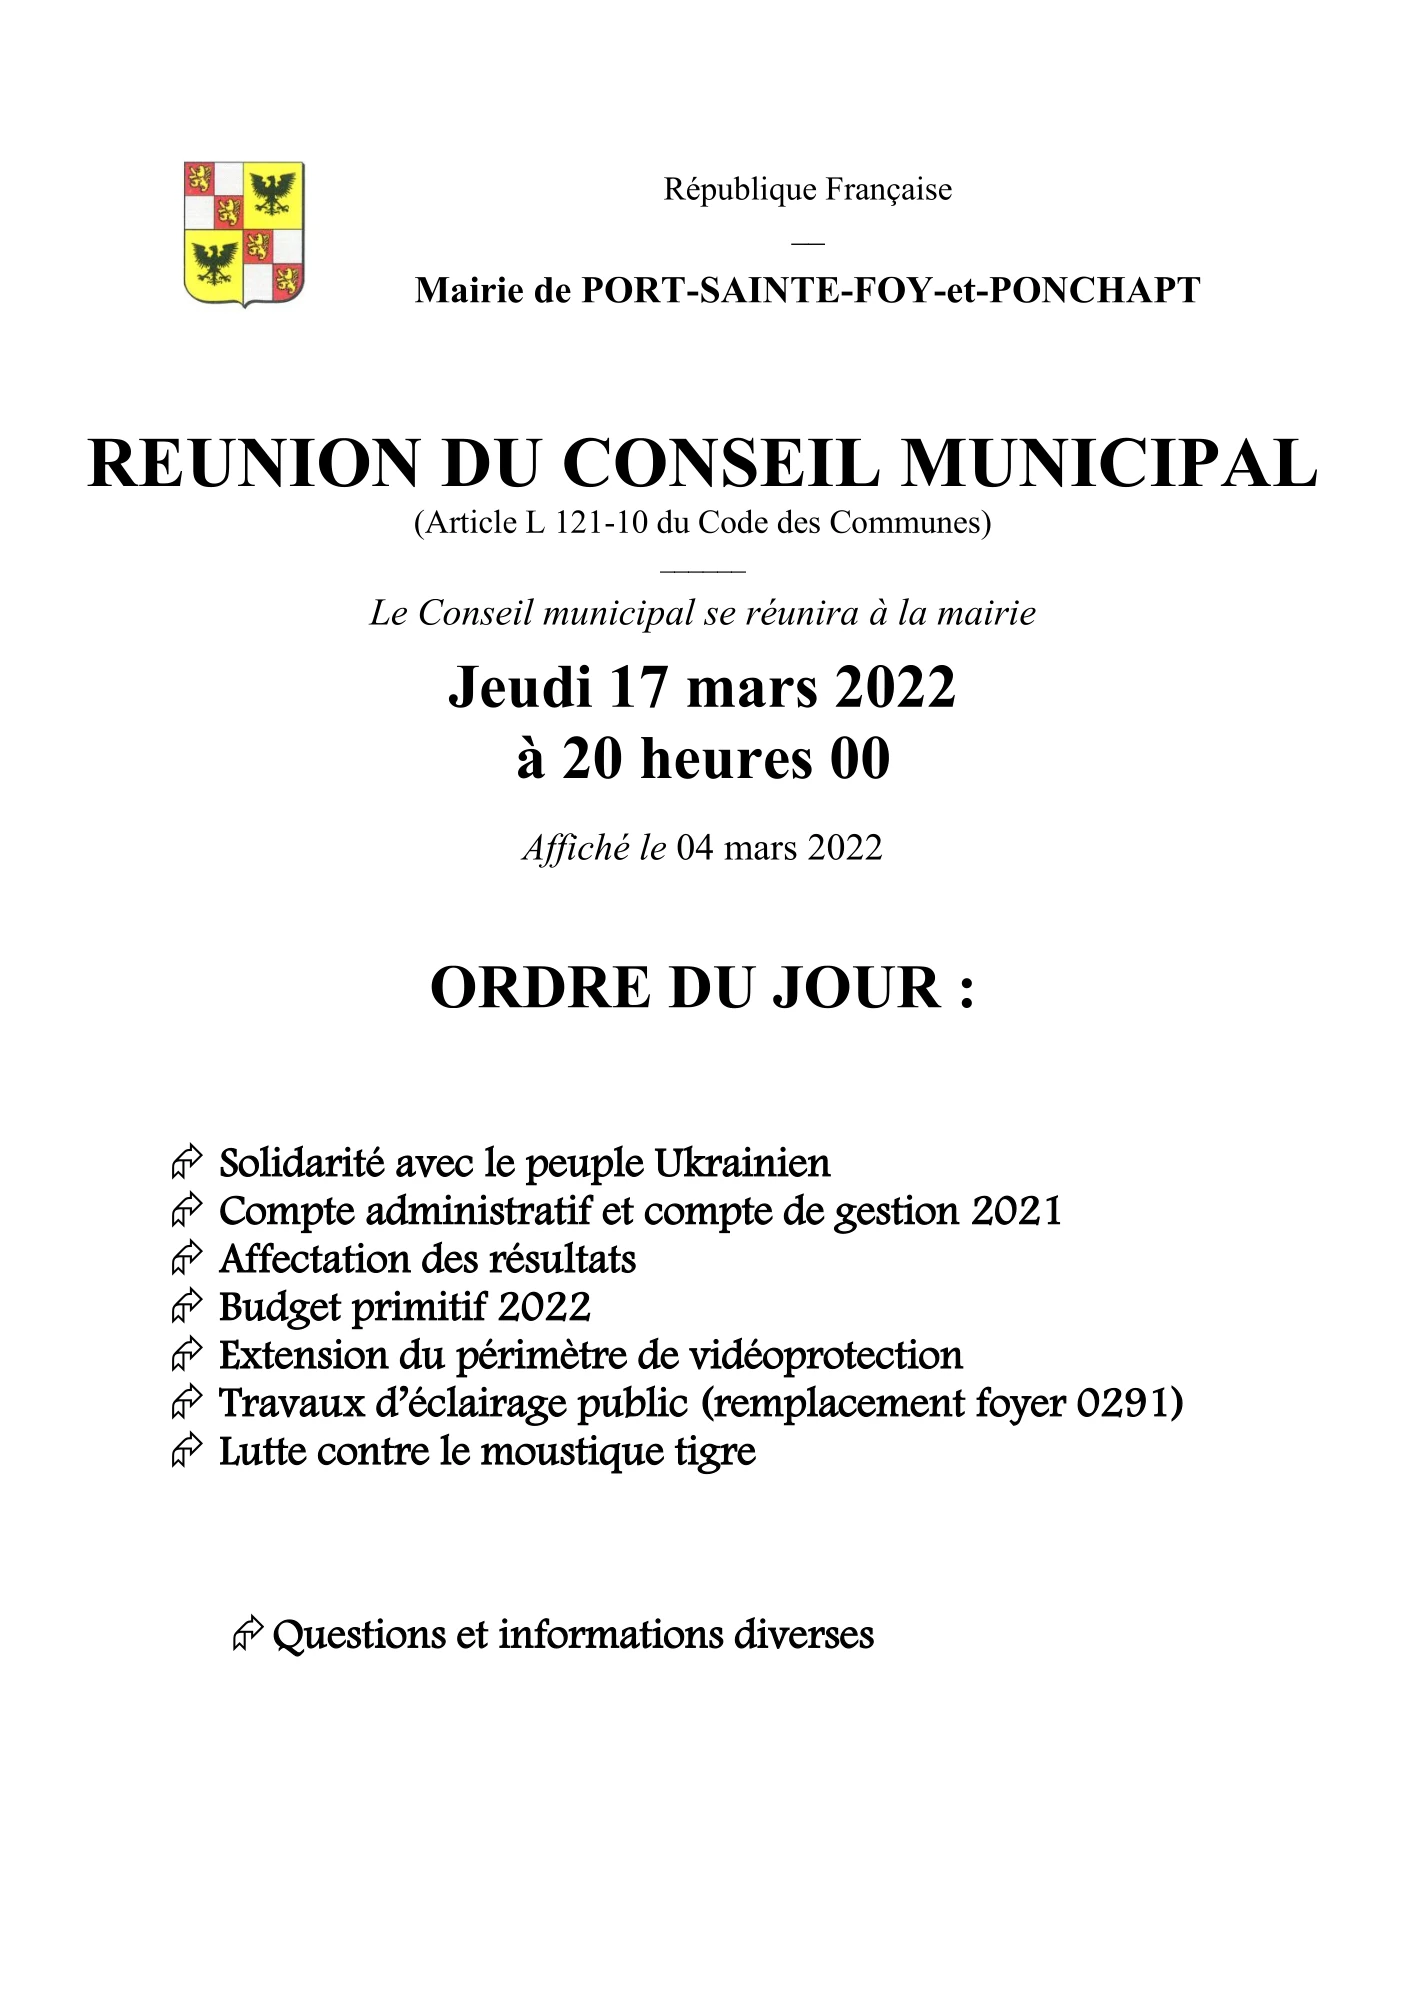 Ordre du jour du Conseil Municipal du 13 janvier 2022